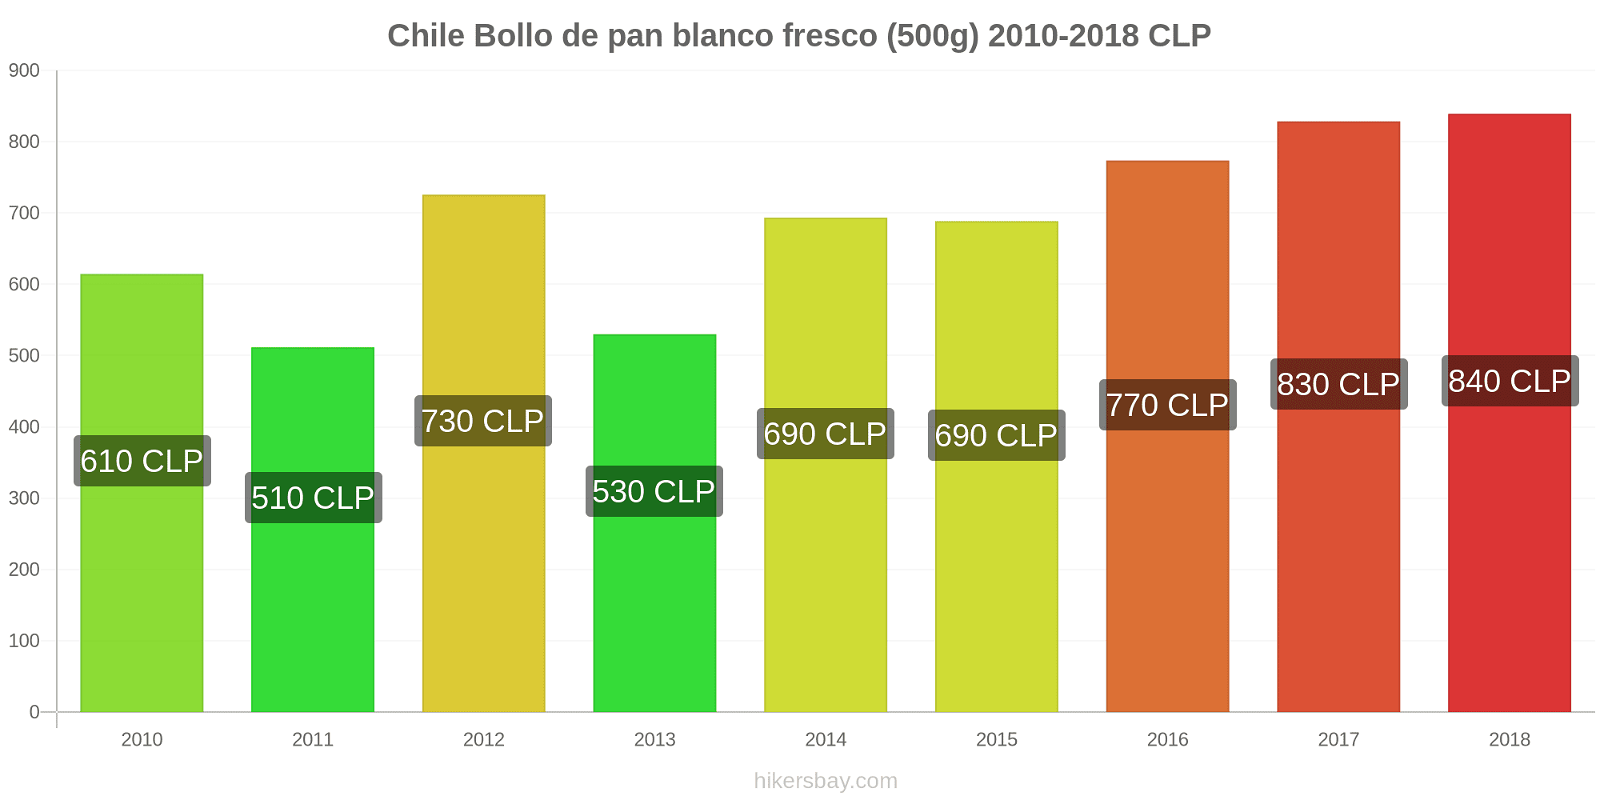 Chile cambios de precios Una barra de pan blanco fresco (500g) hikersbay.com